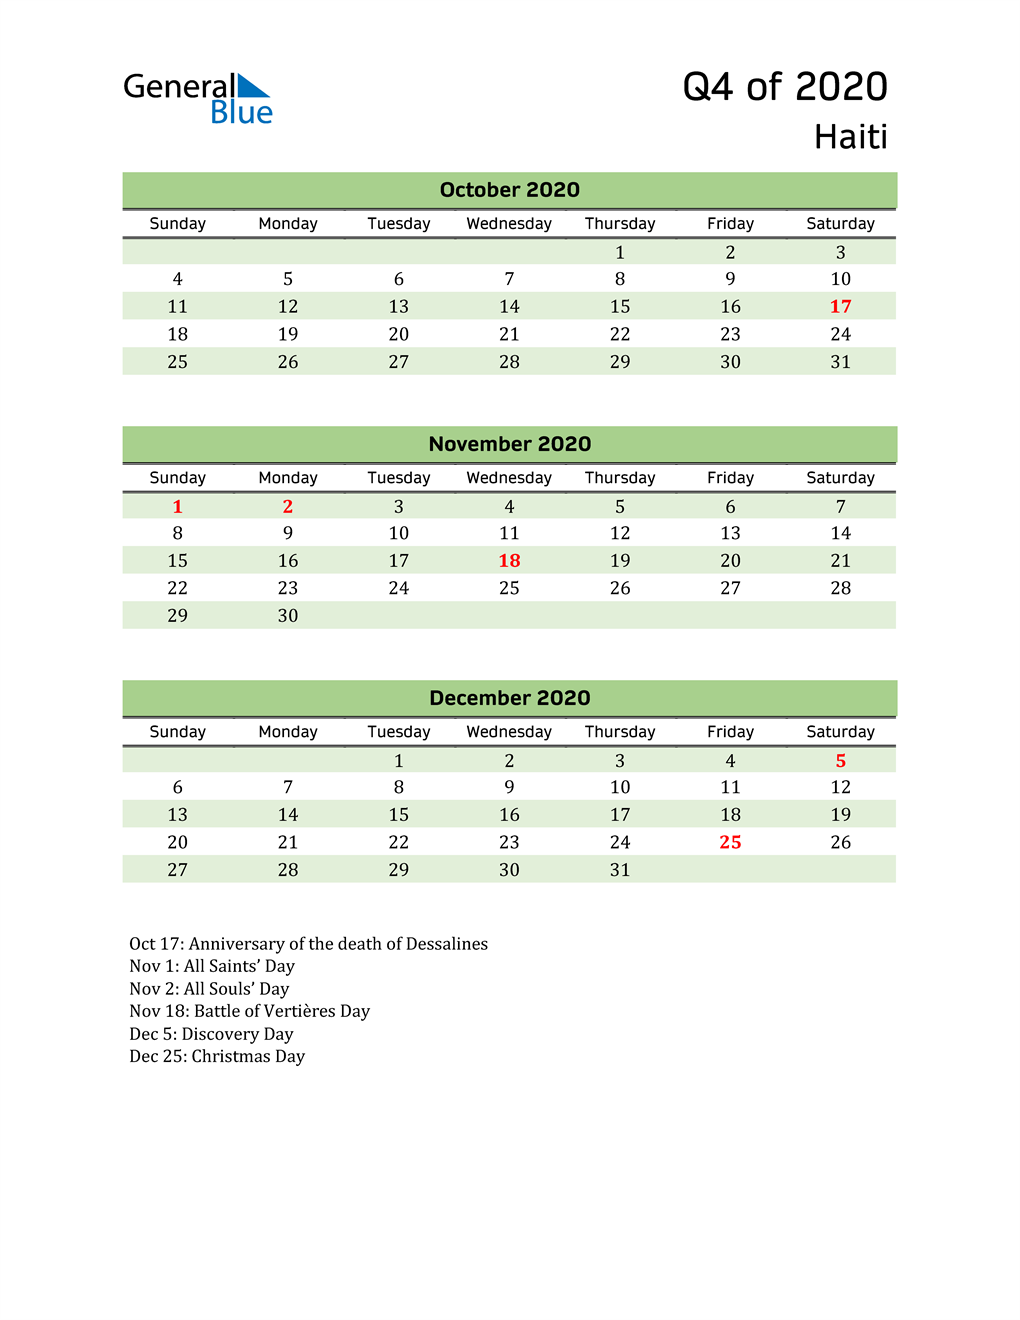  Quarterly Calendar 2020 with Haiti Holidays 